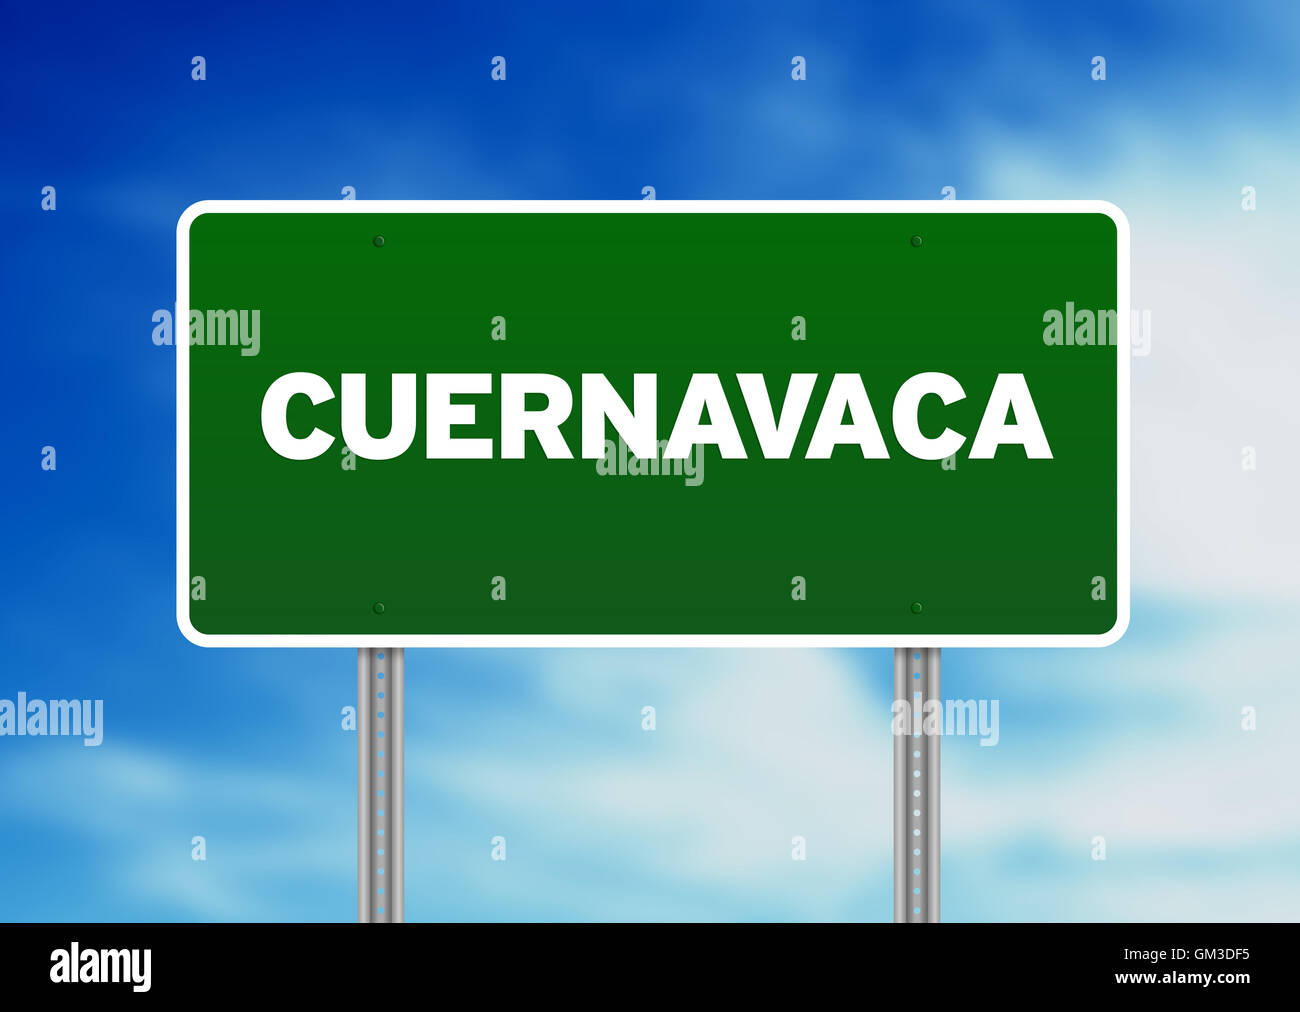 Green Road Sign - Cuernavaca, Mexico Stock Photo